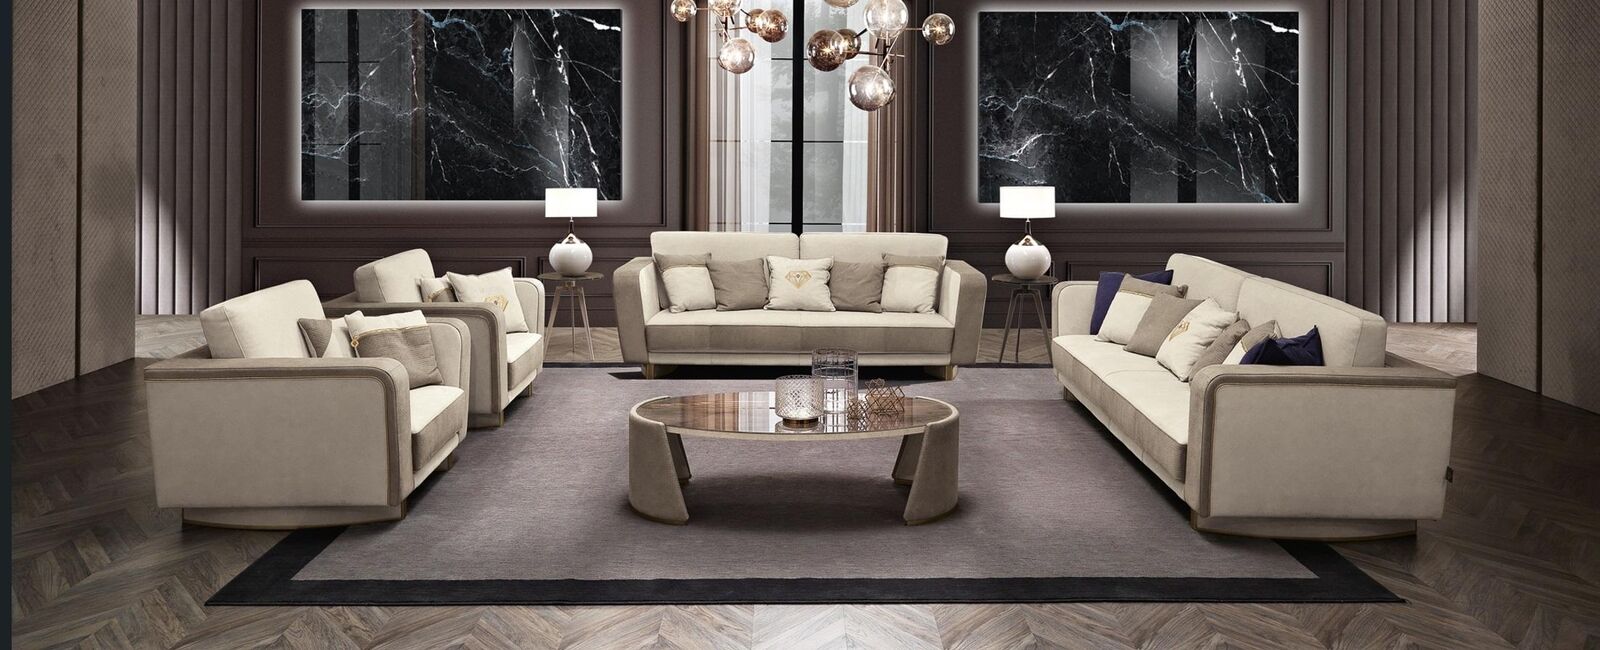 Luxus Möbel Sofagarnitur Couch Sofa Polster 3 3 1 1 Sitzer Couchtisch Holz 5tlg.